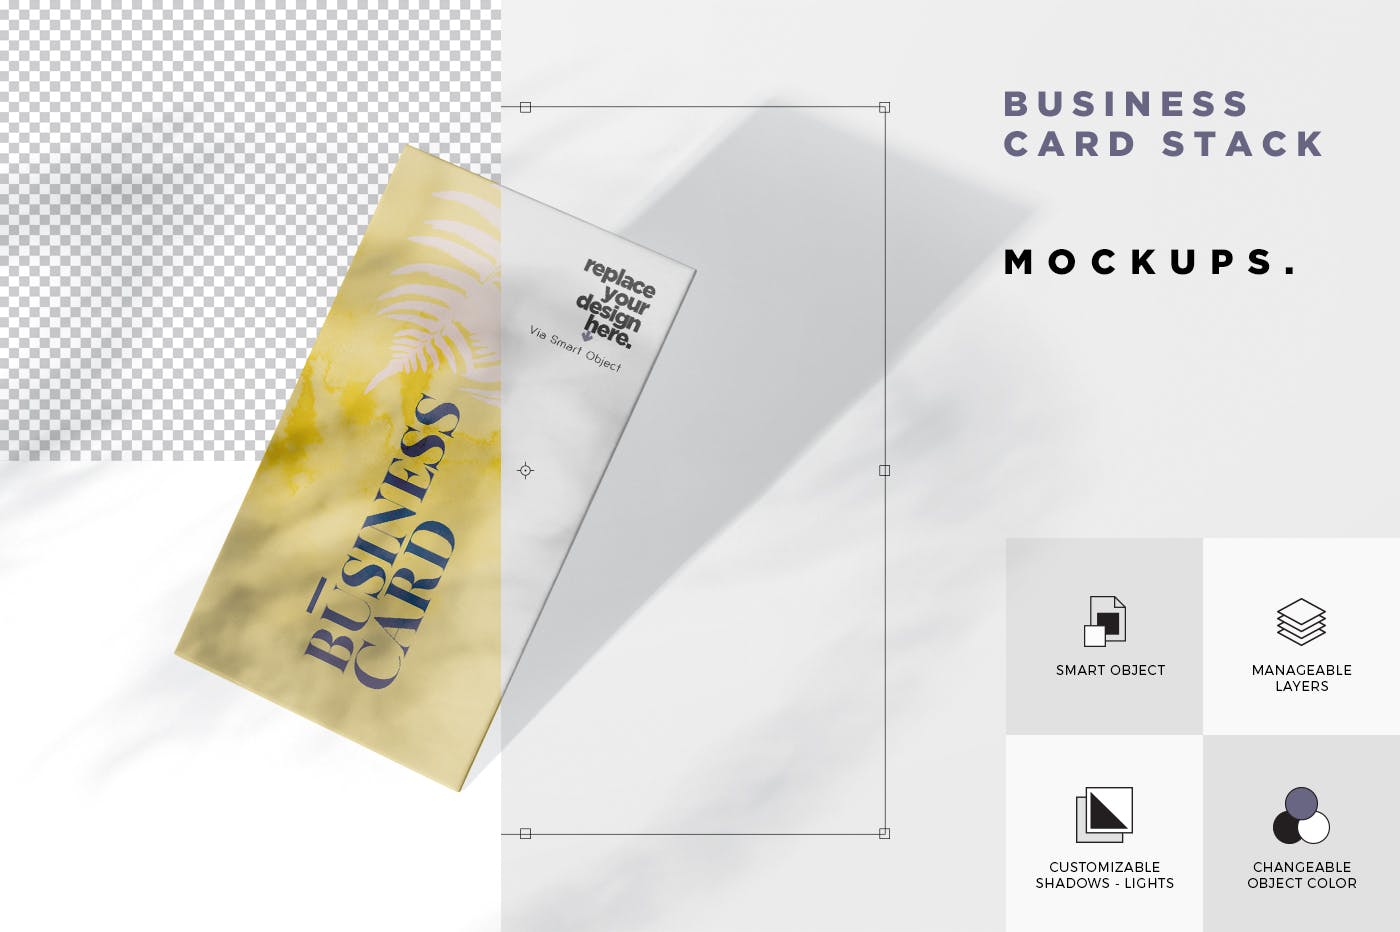 企业名片侧立面效果图样机模板 Business Card Stack Mockup in 90×50 Format插图(5)